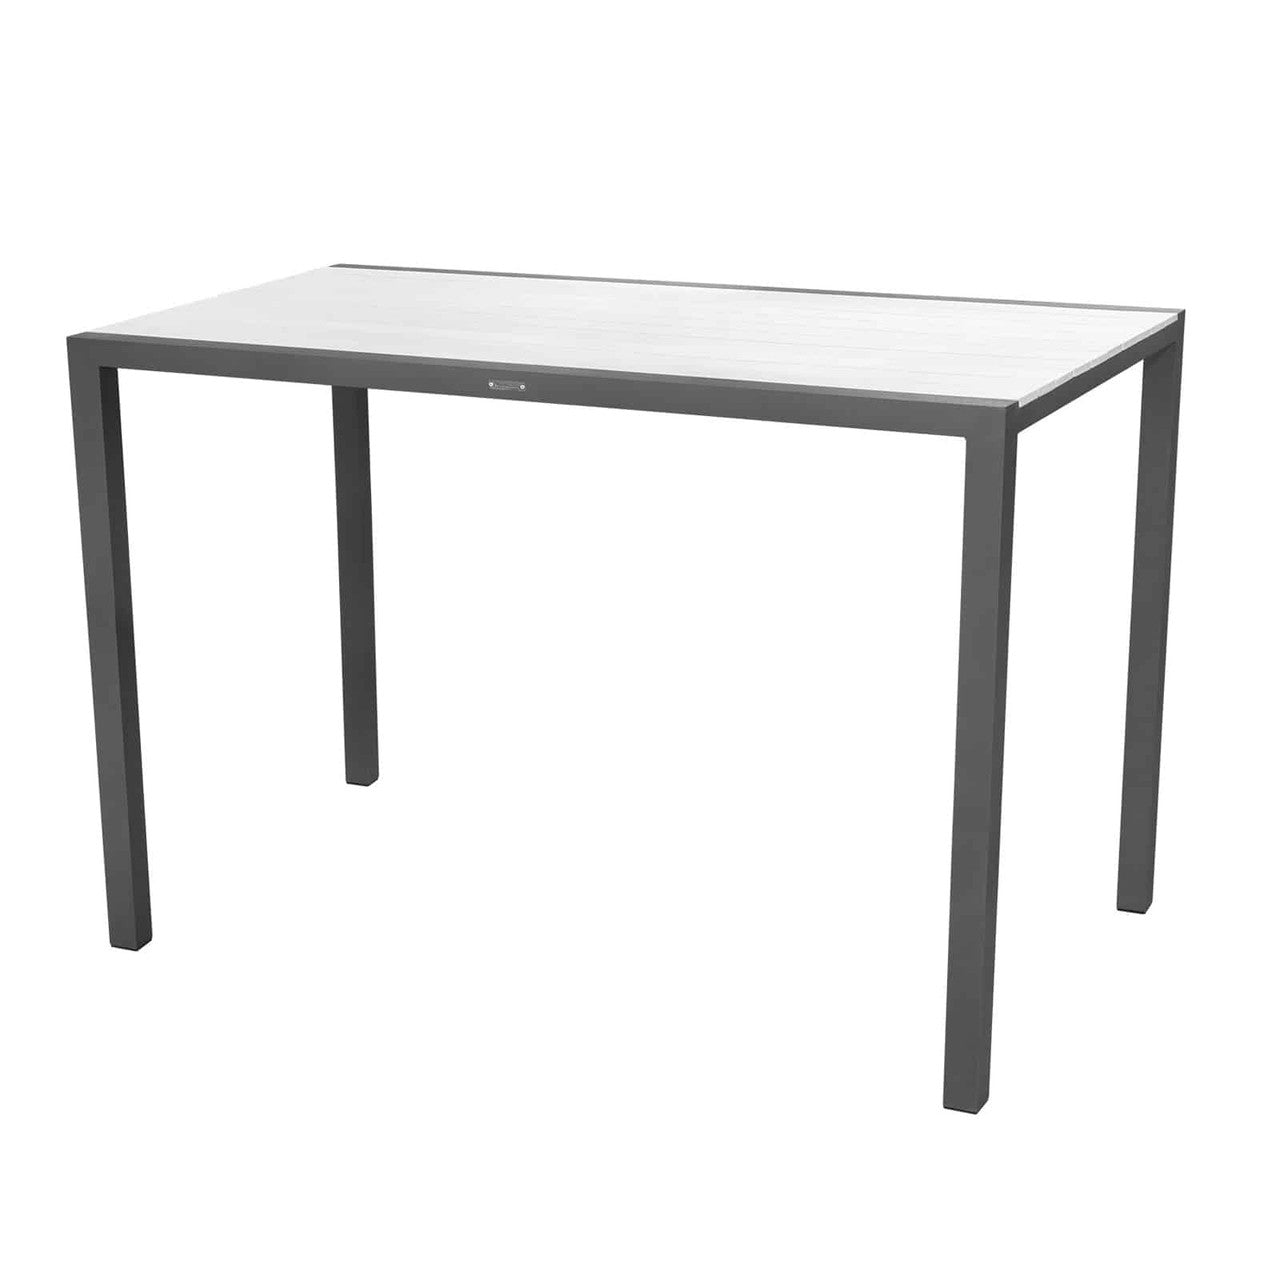 Source Furniture Modera Bar Table - Rectangular